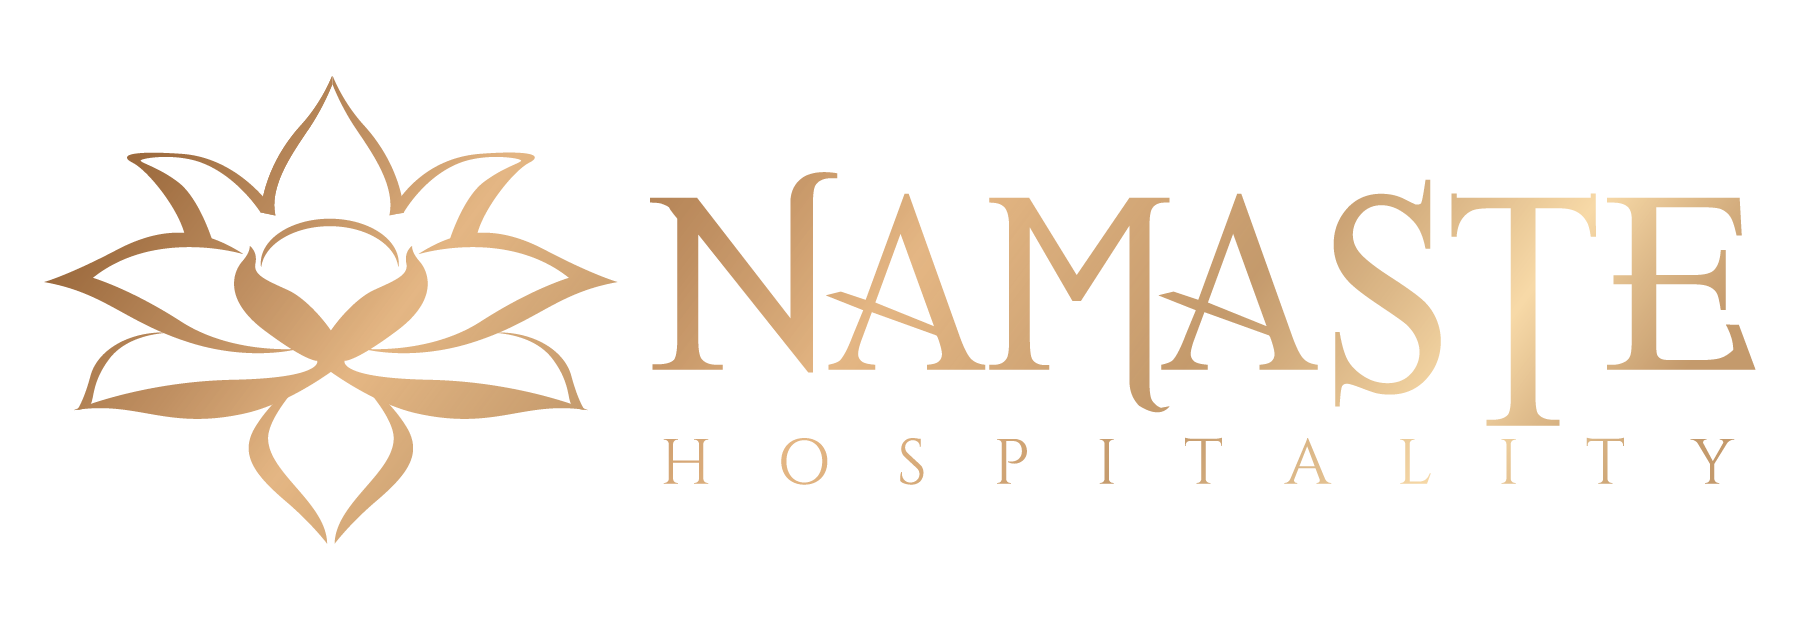 Namaste Hospitality Consulting